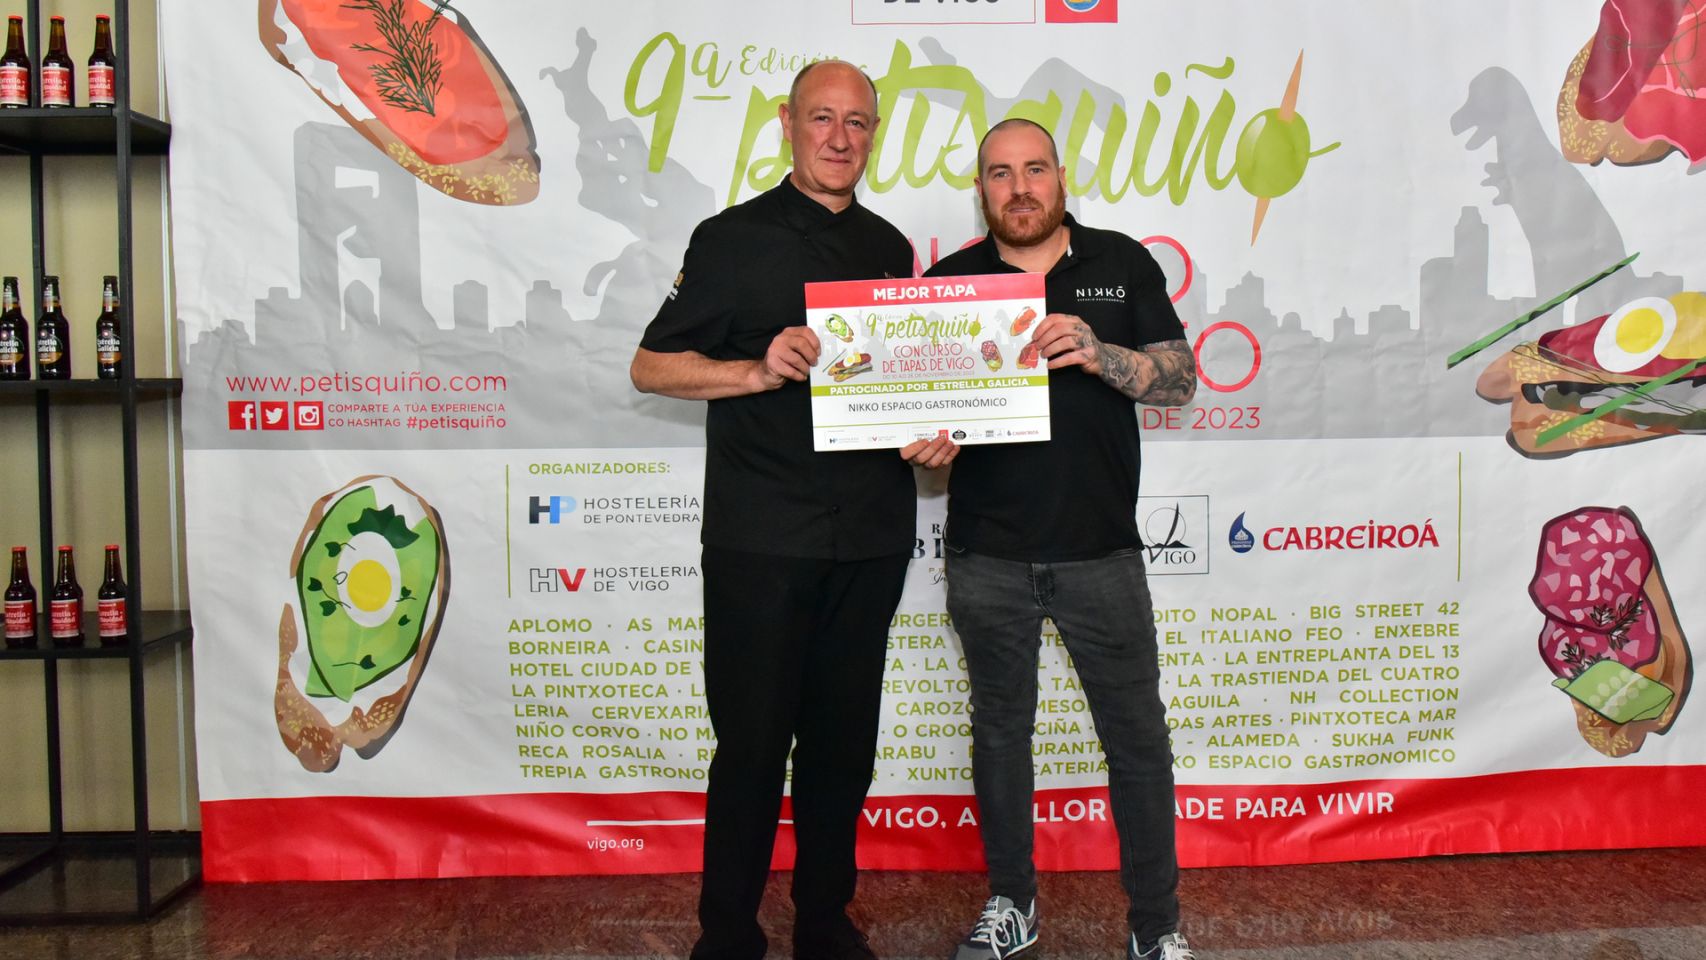 Nikko, espacio gastronómico ganador de la novena edición del concurso Petisquiño a la mejor tapa.